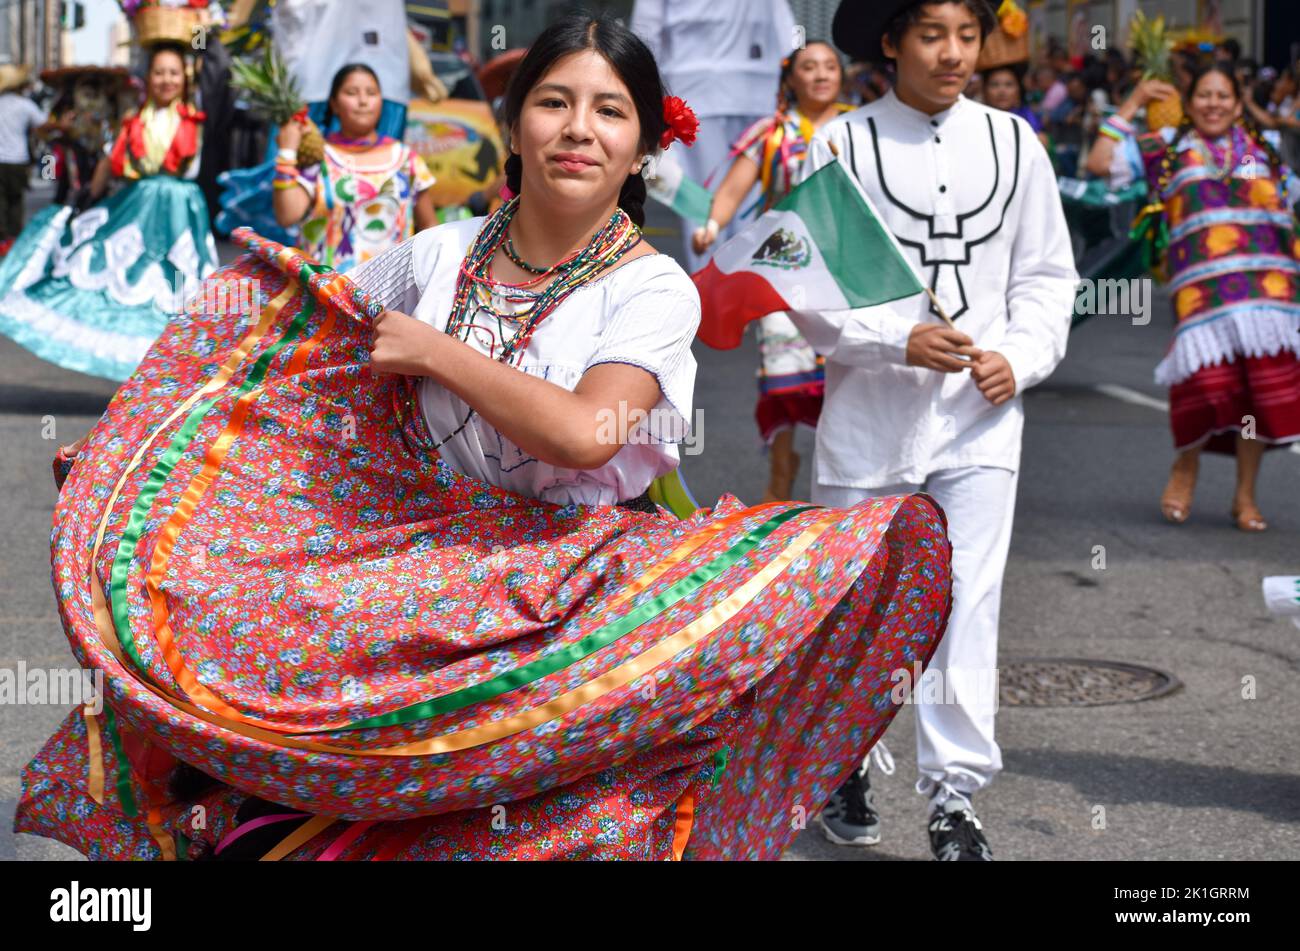 Les participants effectuent une danse folklorique traditionnelle le long de Madison Avenue lors de la parade de la fête mexicaine. Crédit : Ryan Rahman/Alay Live News. Banque D'Images